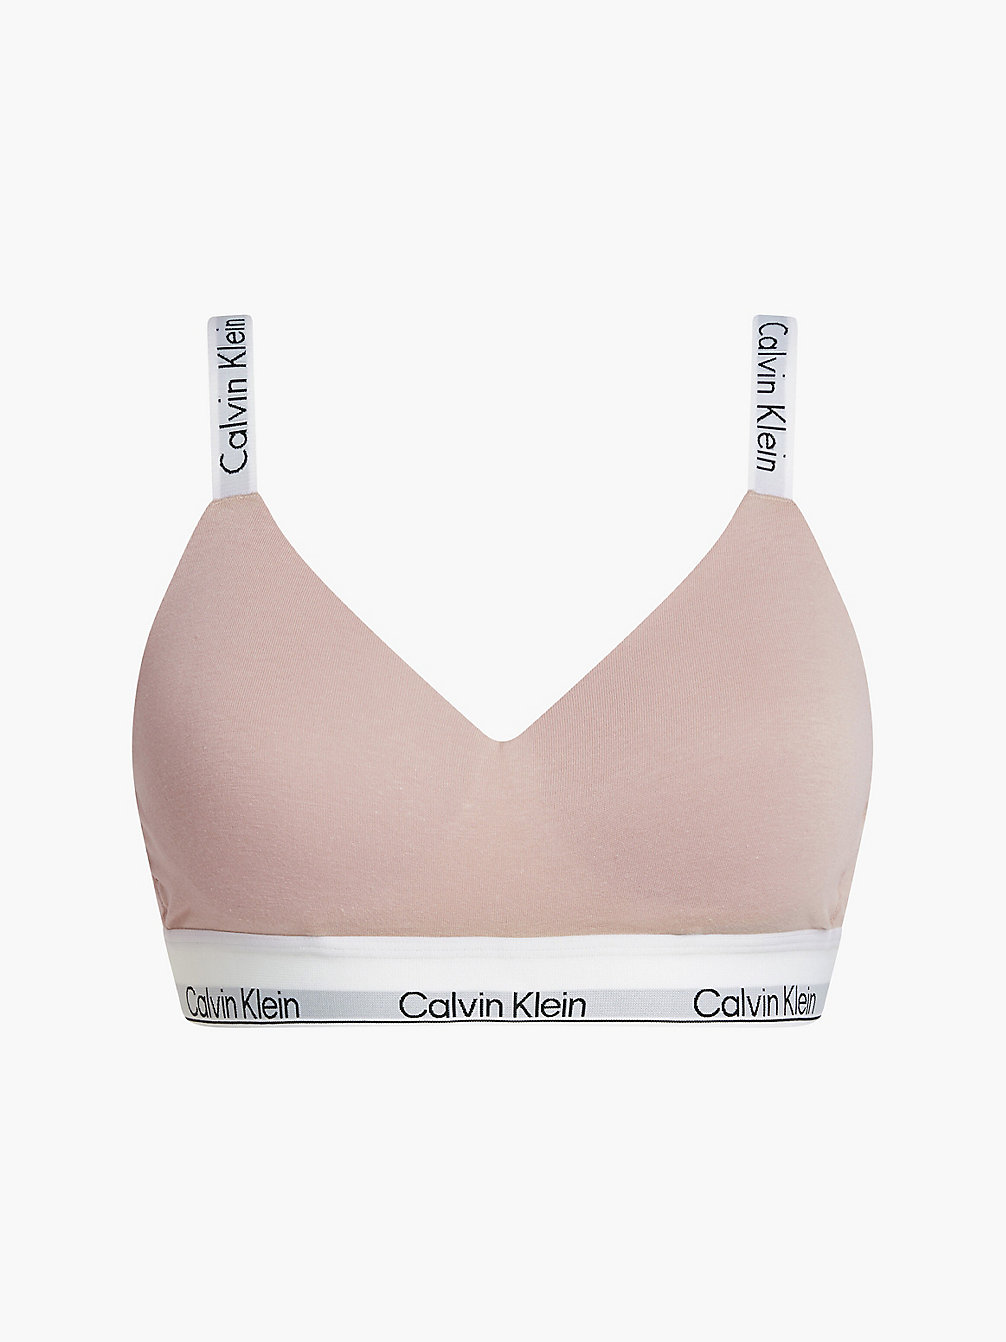 CEDAR > Бралетт - Modern Cotton > undefined Женщины - Calvin Klein